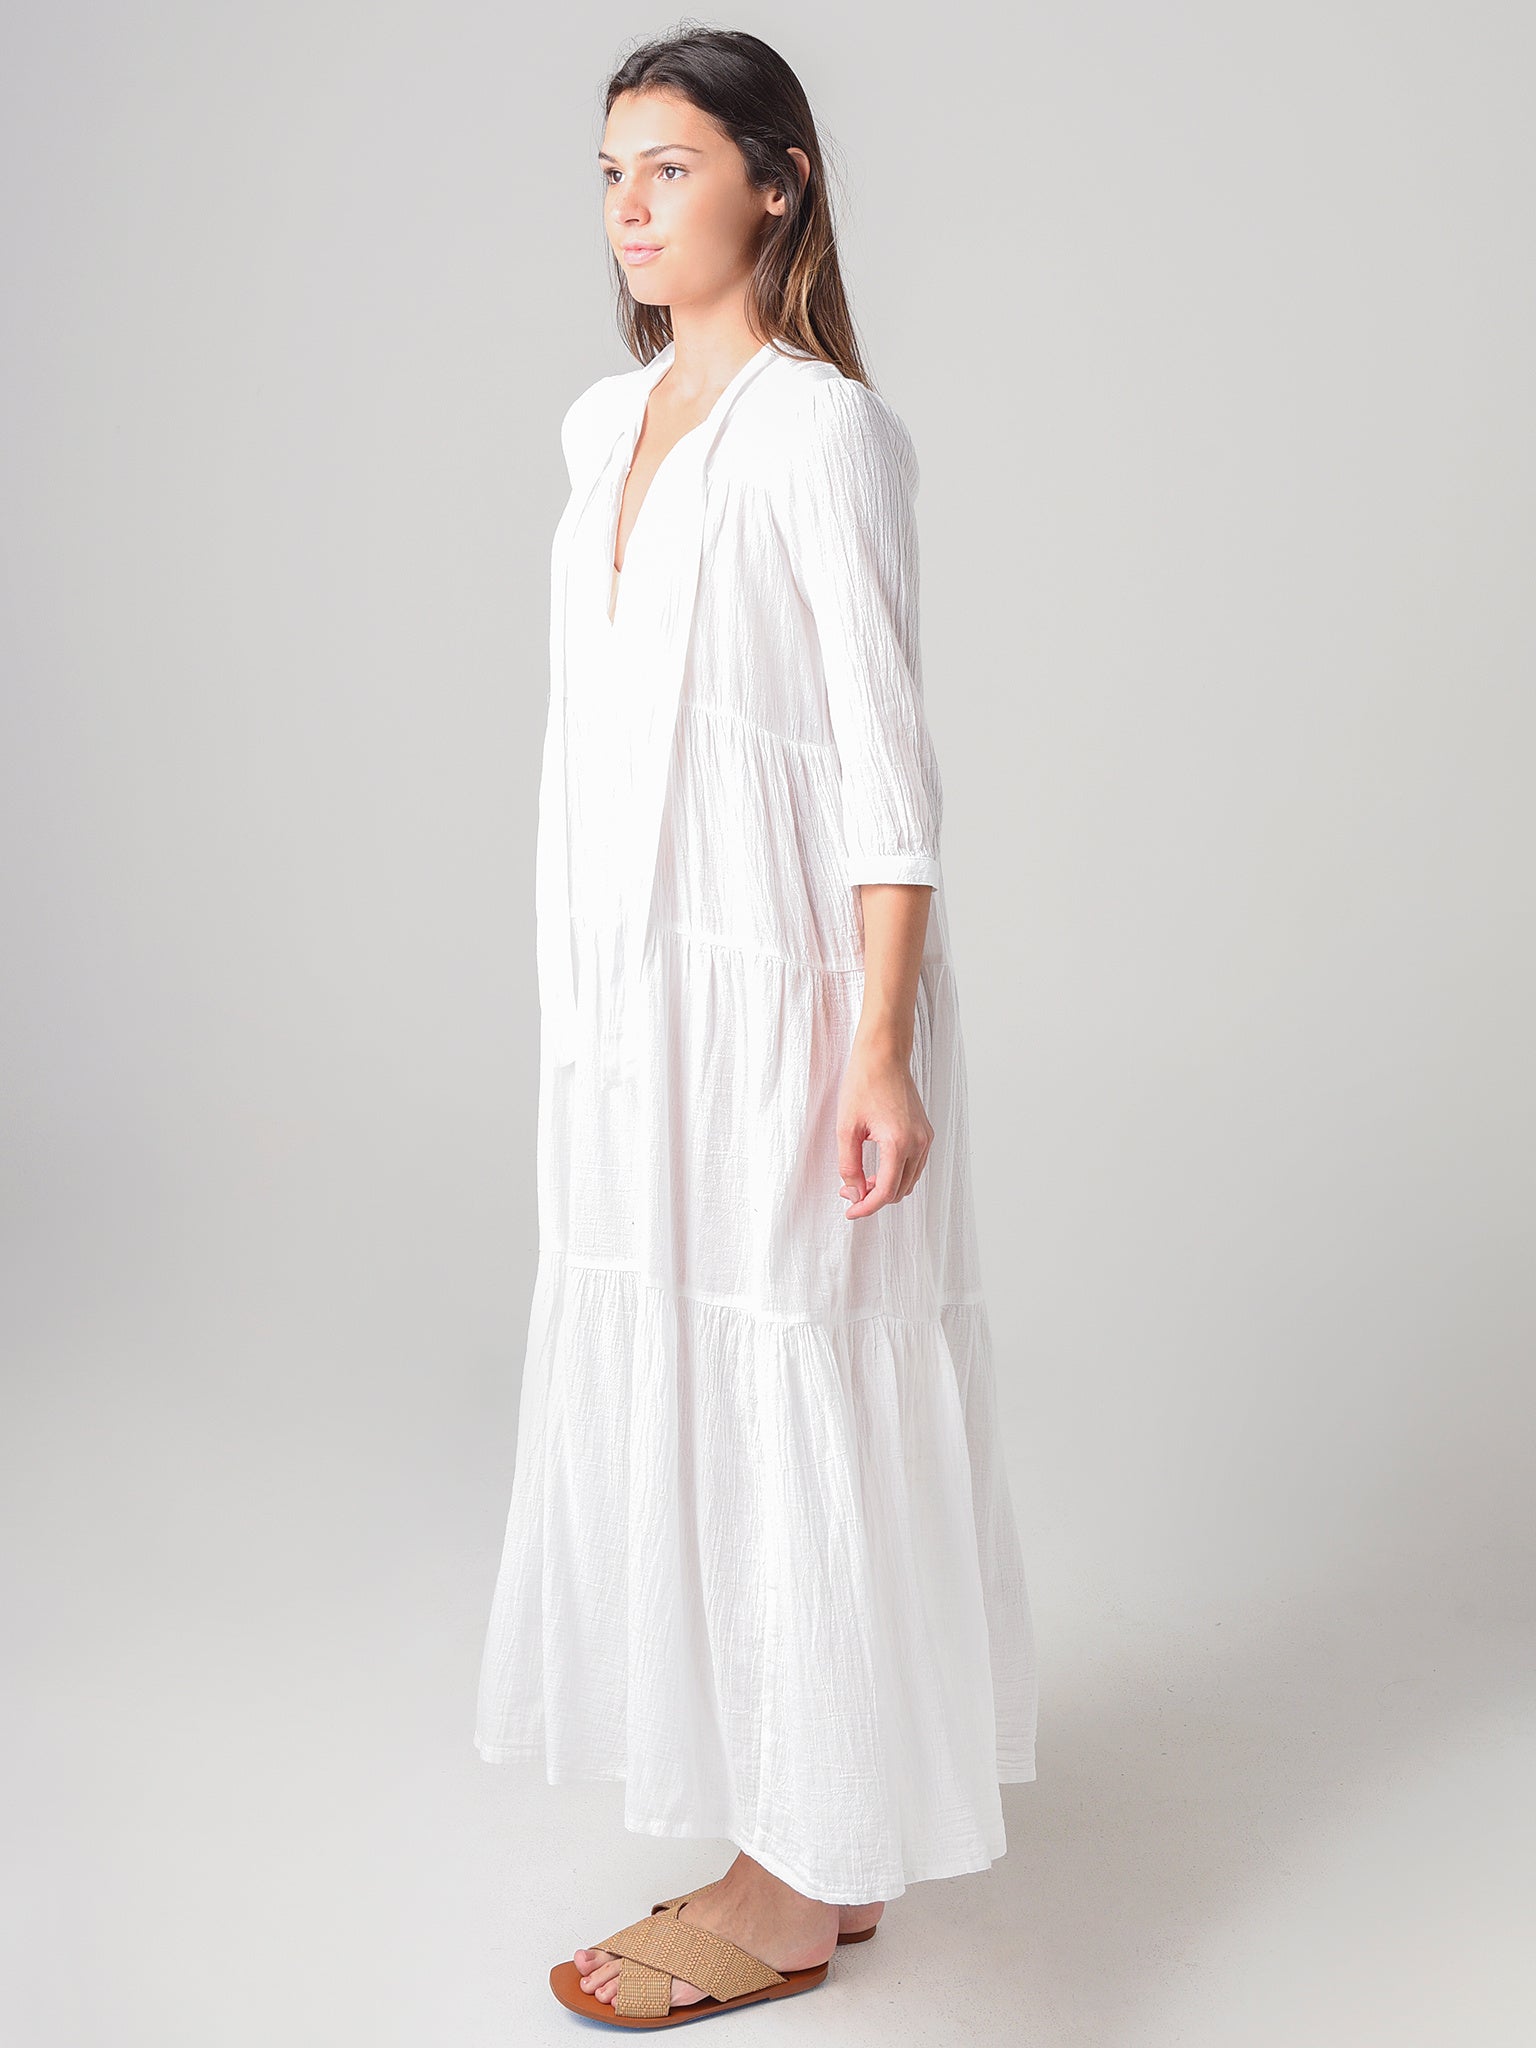 Honorine Women's Long Giselle Dress – saintbernard.com